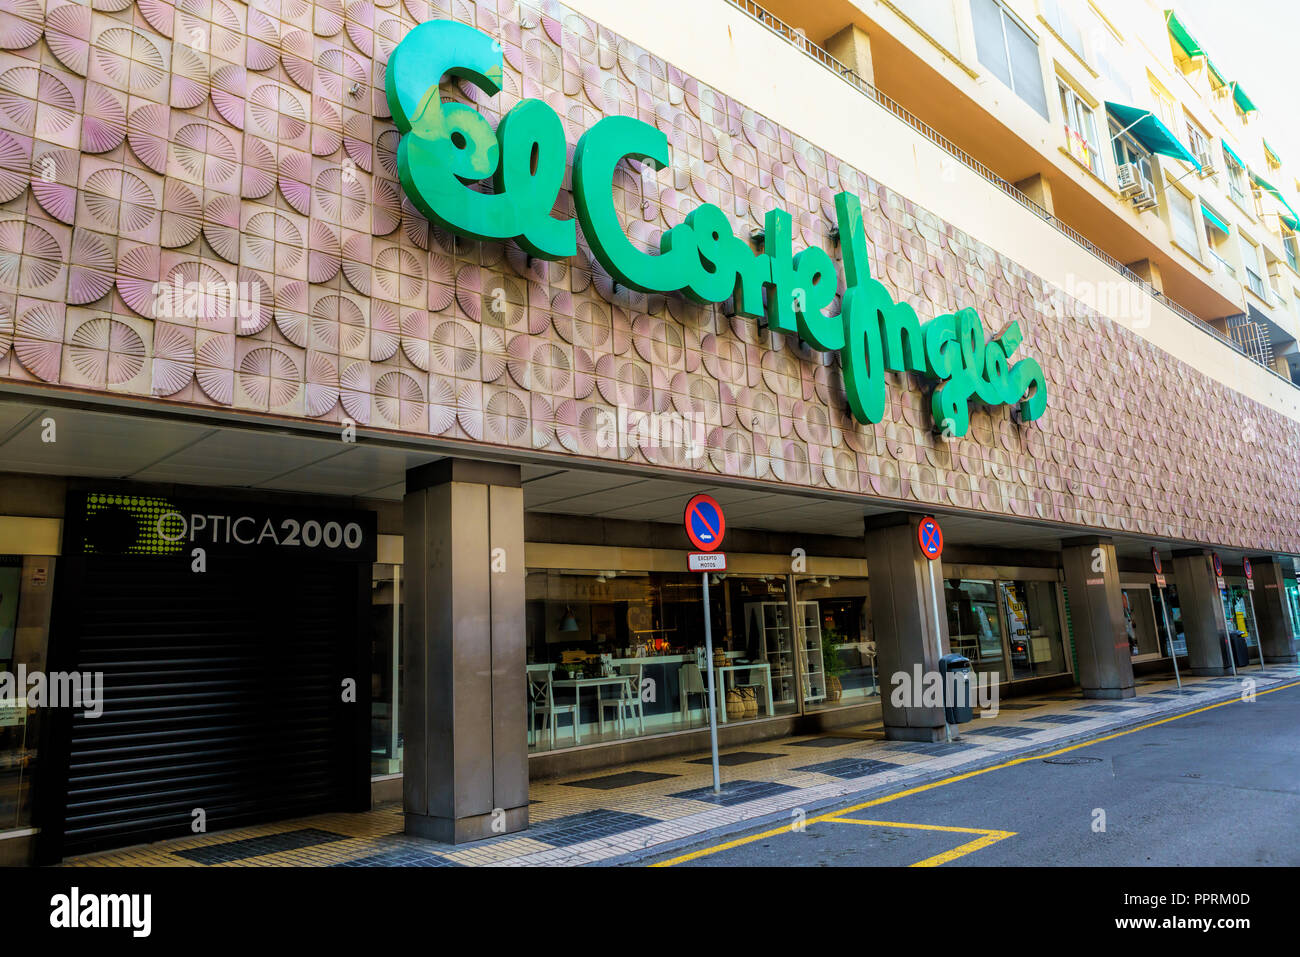 El Corte Inglés - Supermercado - Apps on Google Play